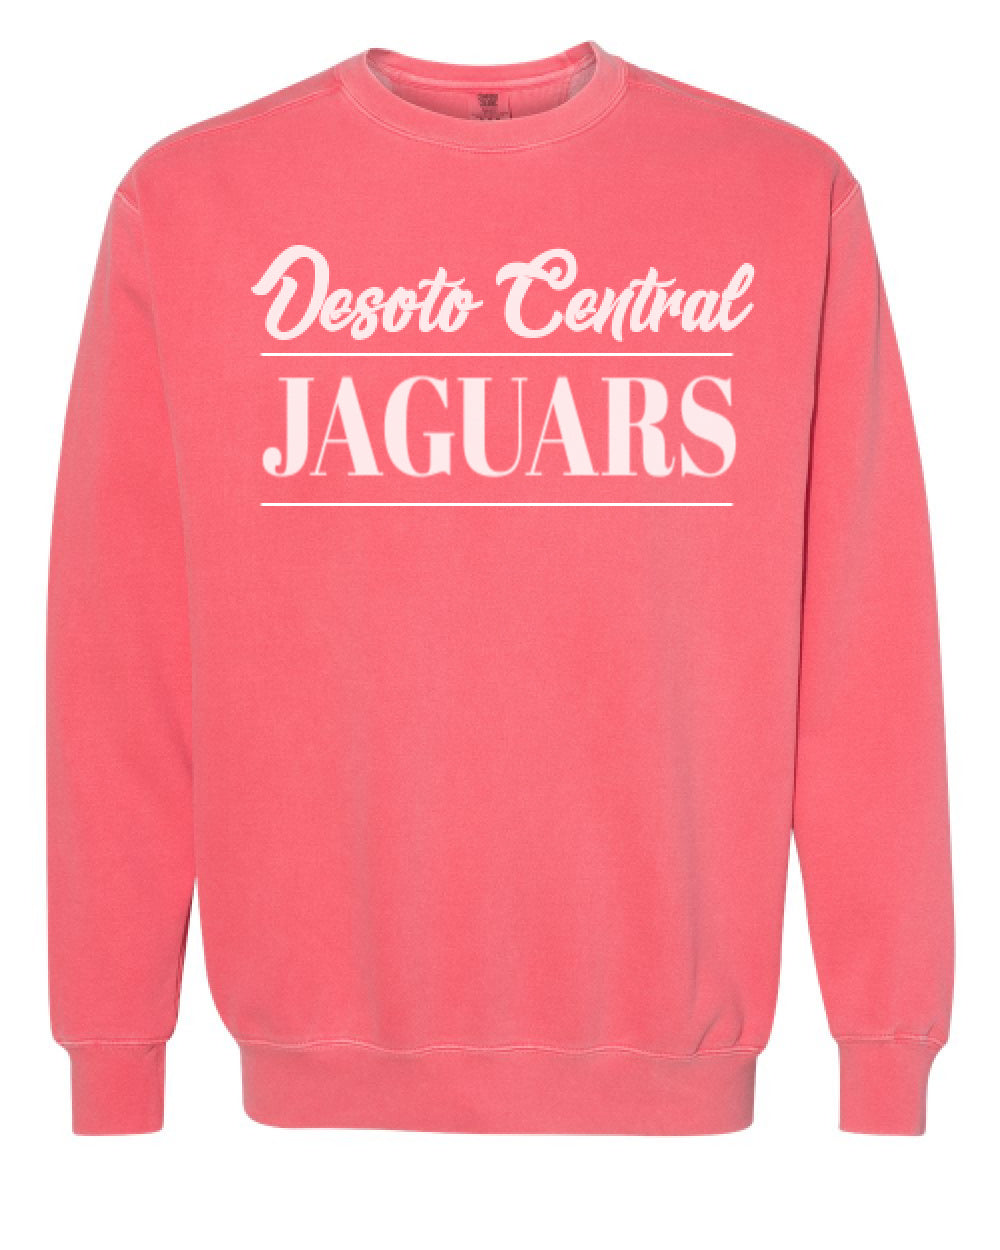 DeSoto Central Jaguars Comfort Colors Sweatshirts XL / Watermelon